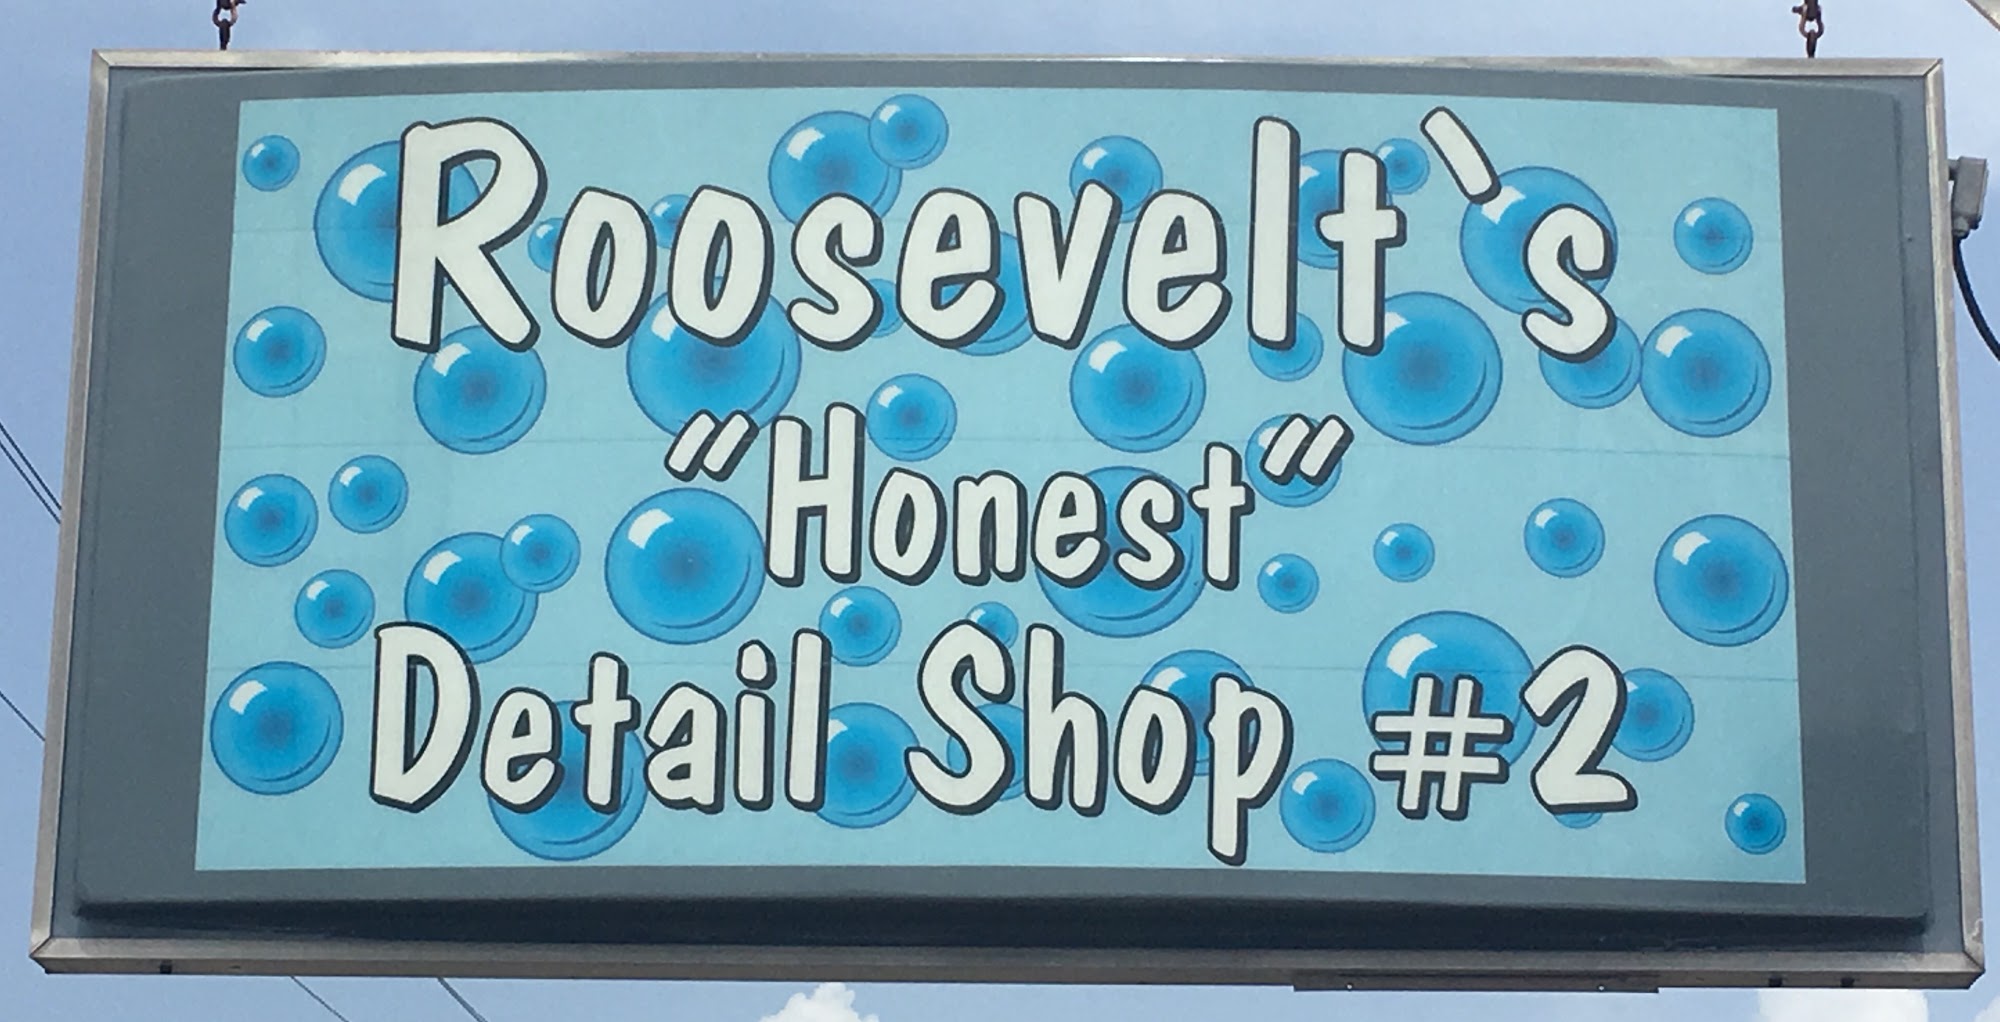 Roosevelt’s “Honest” Detail Shop #2